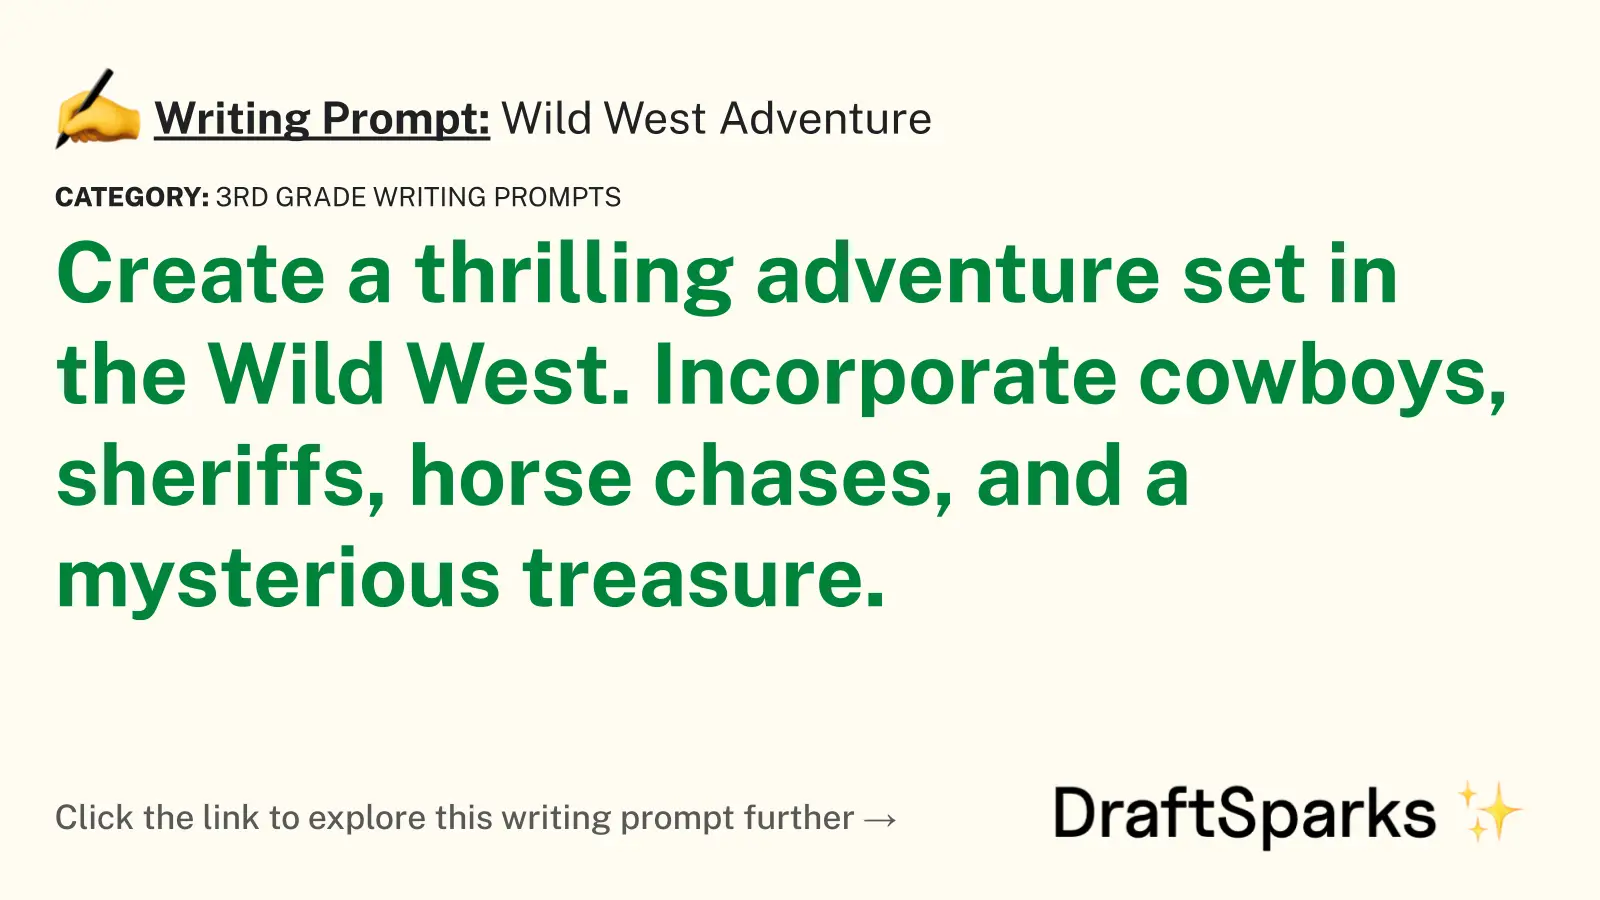 Wild West Adventure